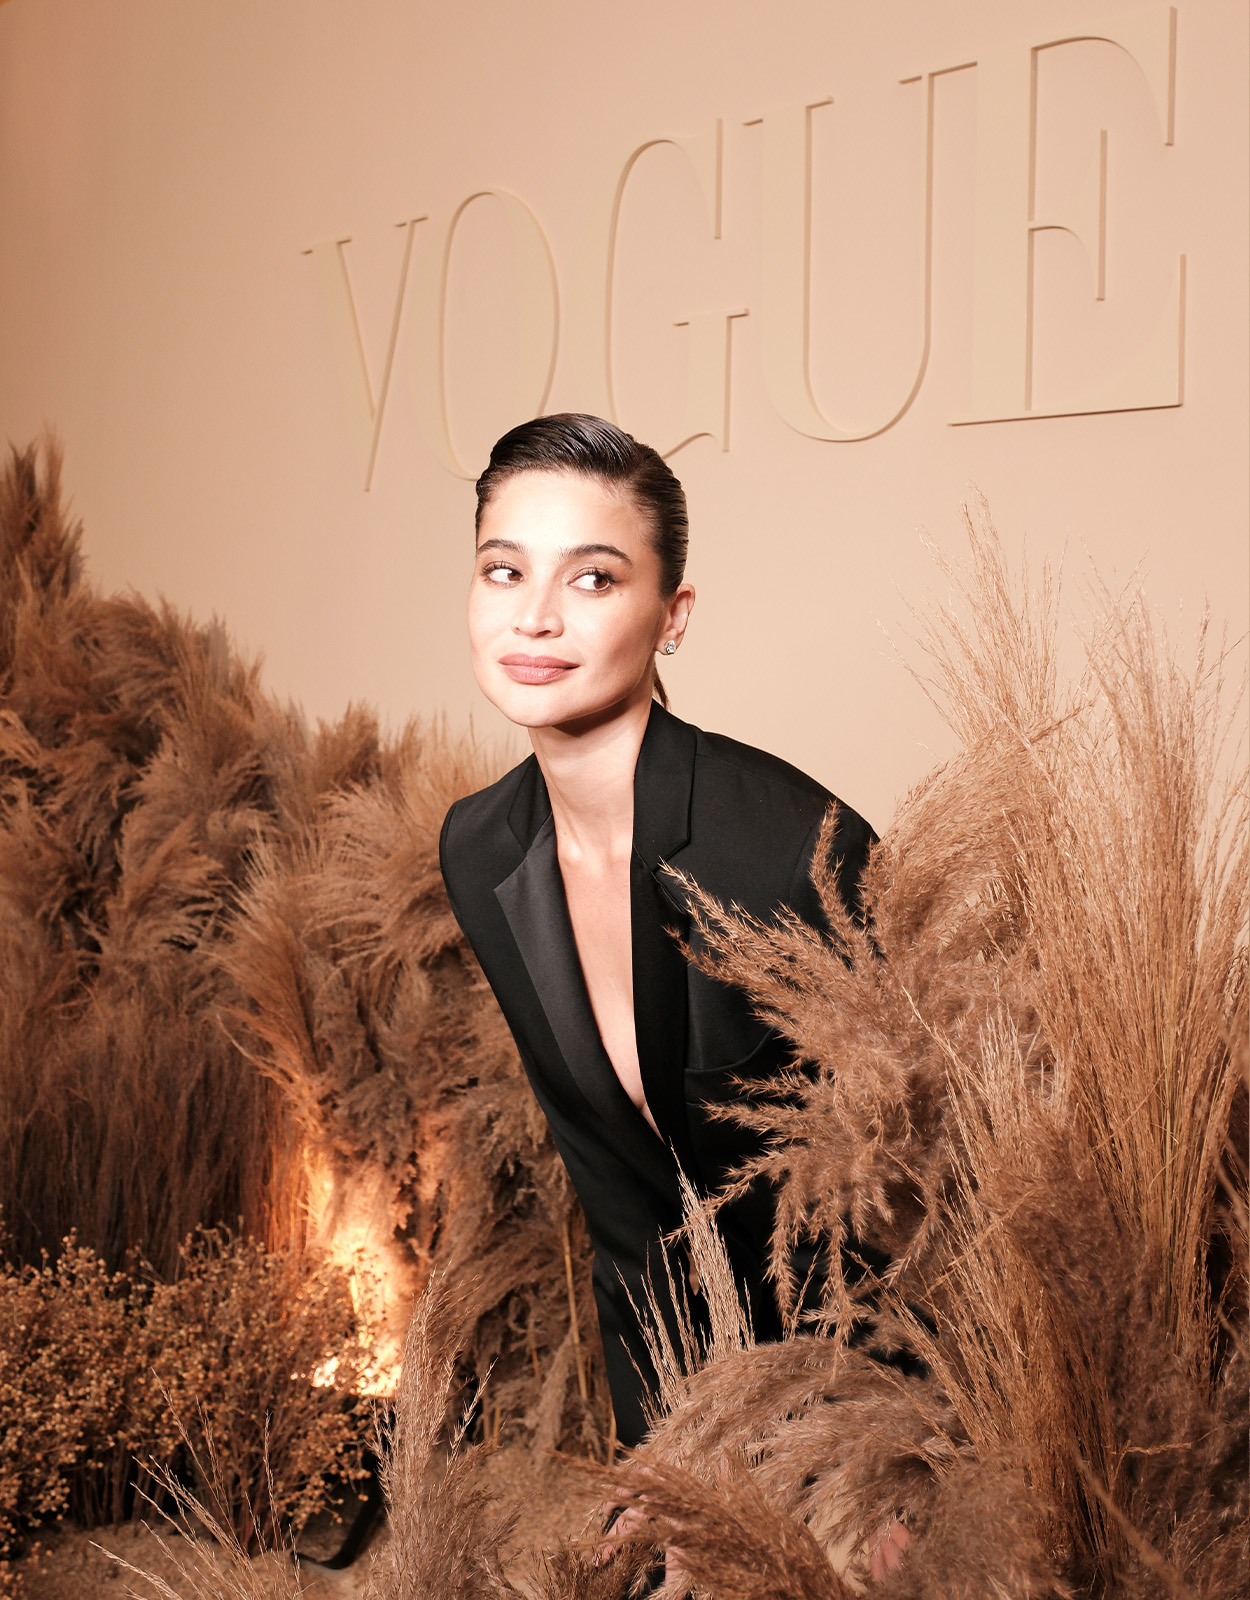 Vogue website features Anne Curtis - Filipino Journal